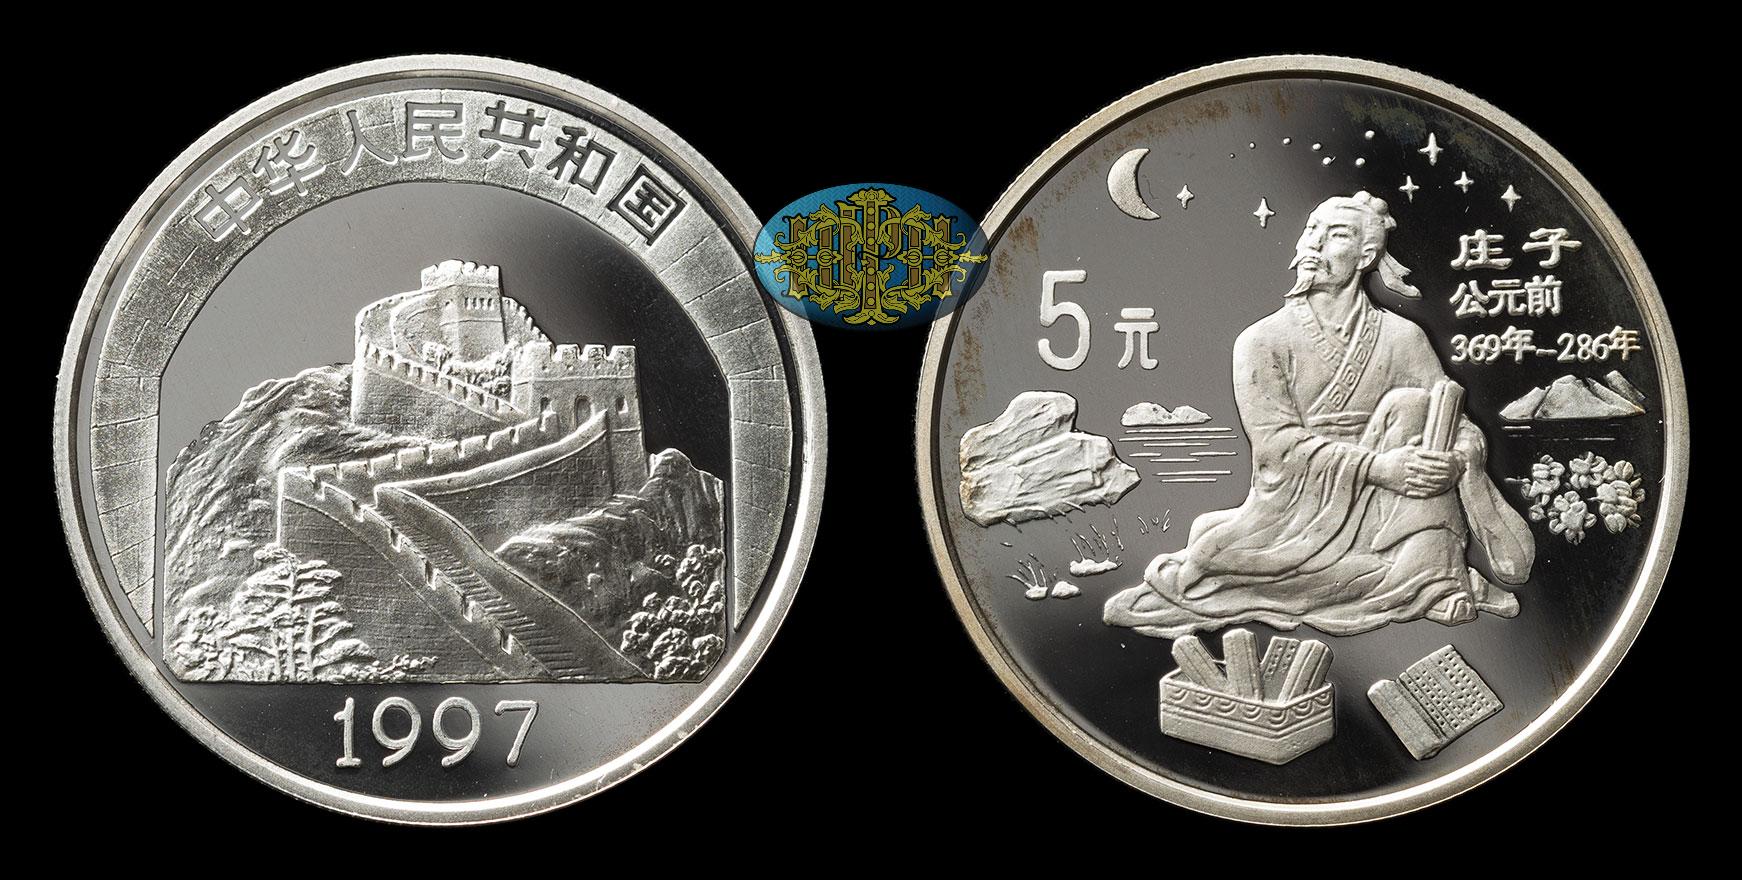 5 Юаней. Монеты Китая 1995. 5 Юаней 1995 Китай серебро китайская культура Император. 5 Юаней 1997 года Китай — китайская культура.